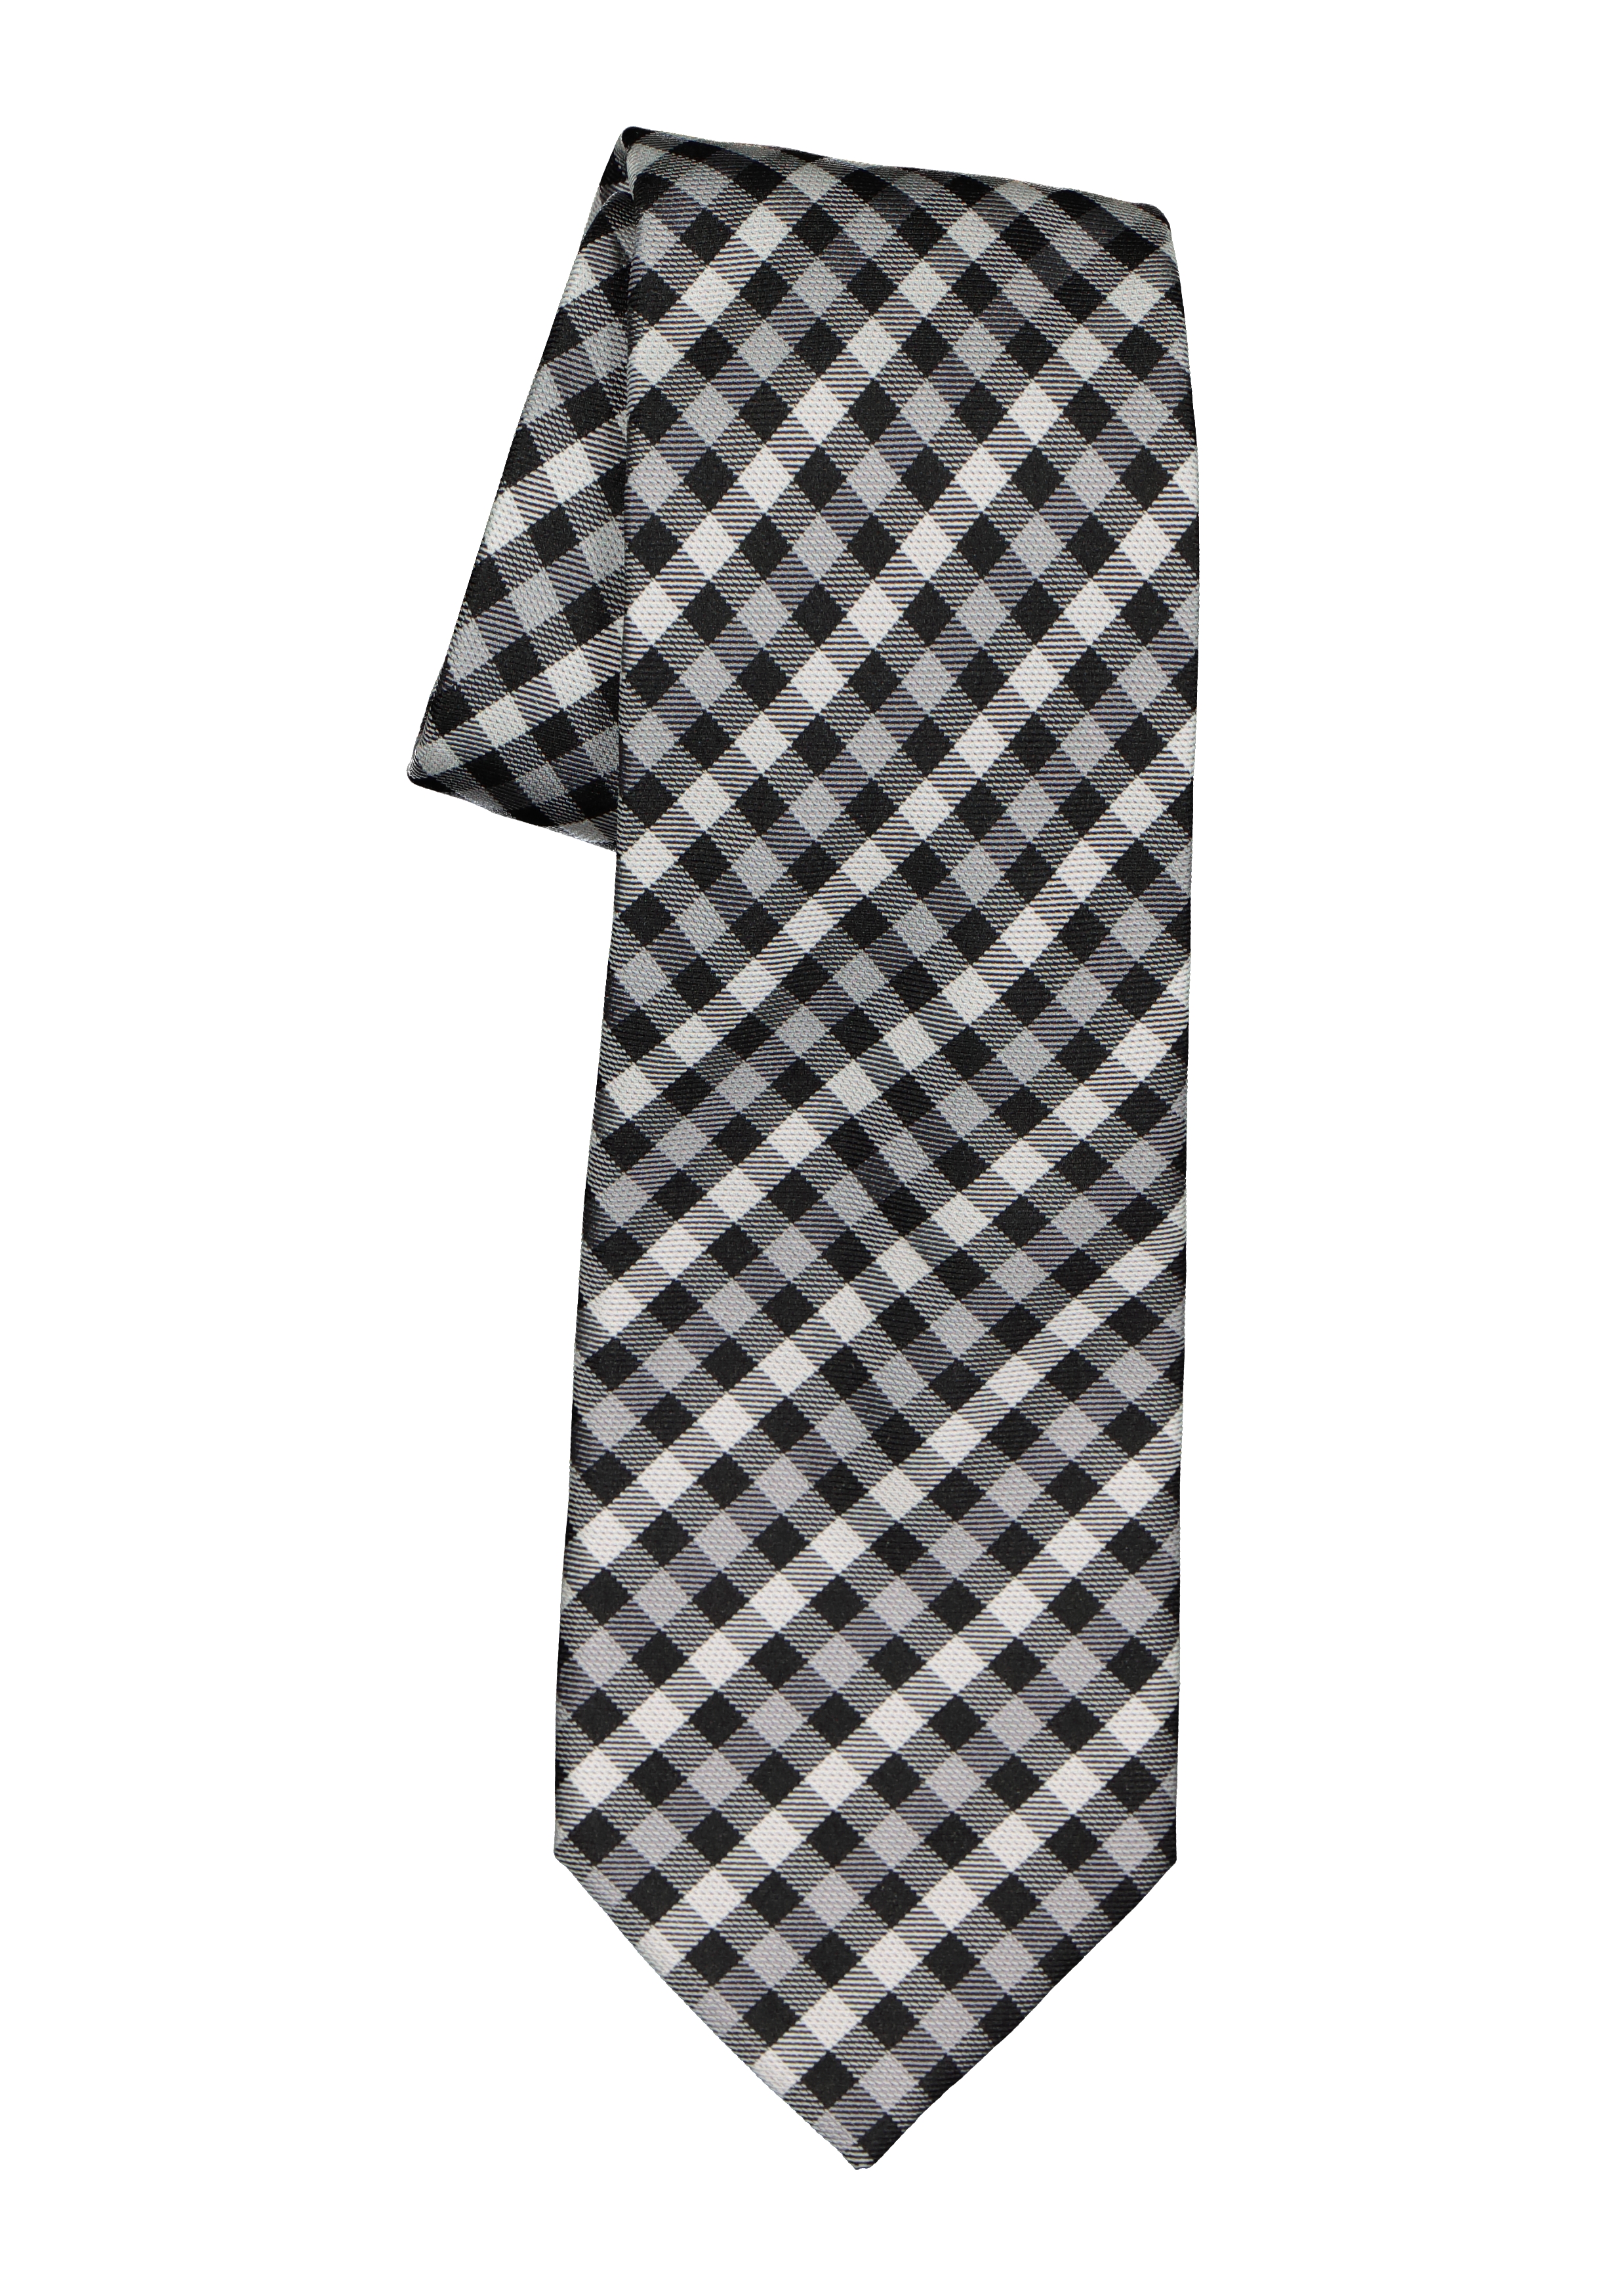 Menda City Heel veel goeds Lima Michaelis stropdas, zwart-wit geruit - Shop de nieuwste voorjaarsmode